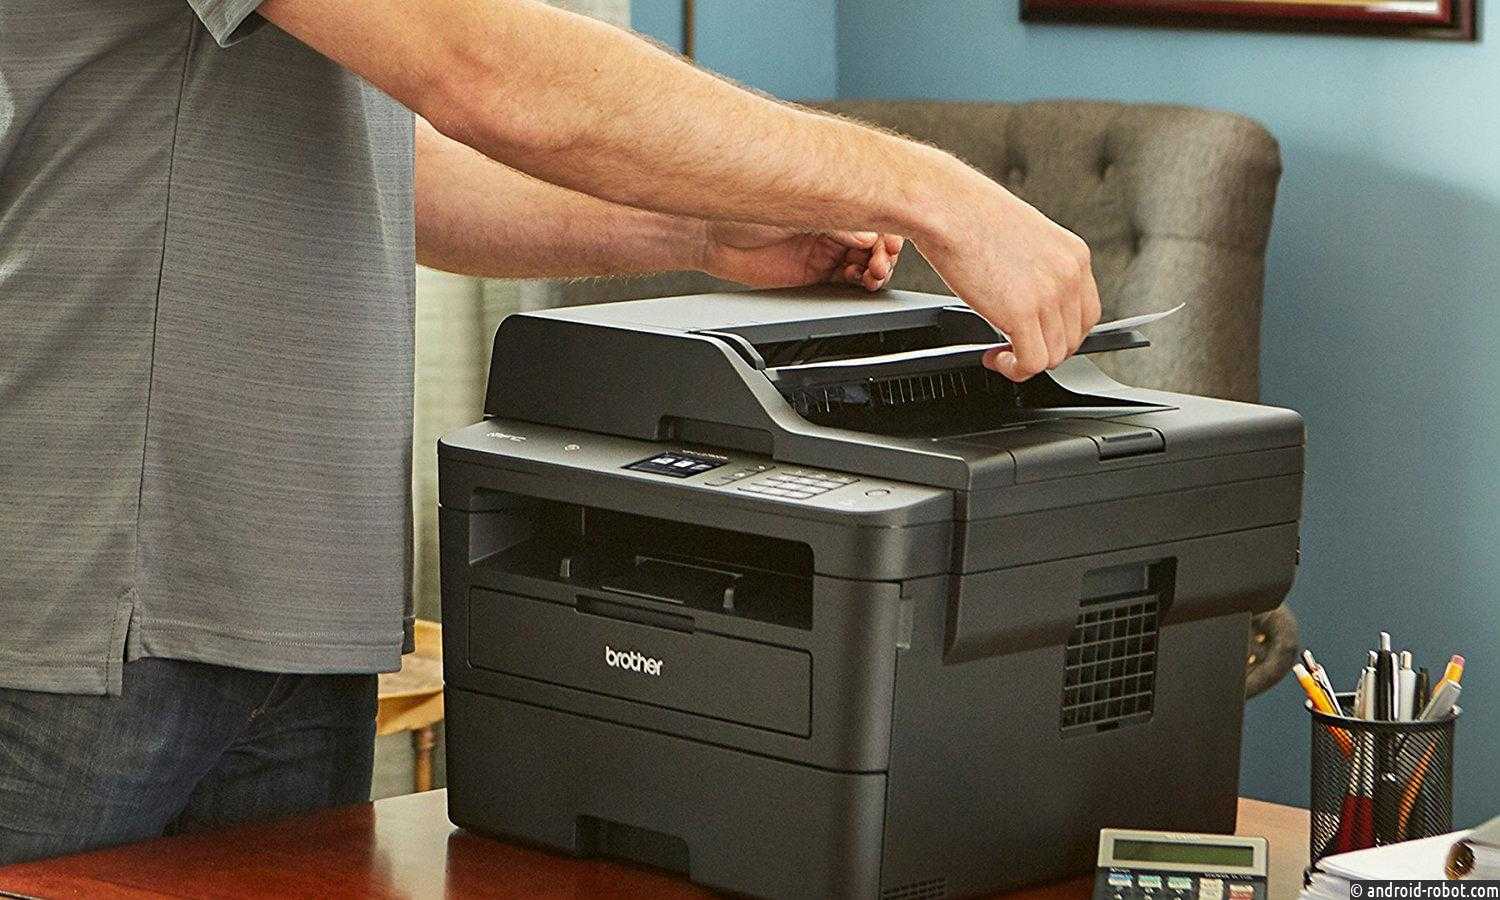 Какой принтер выбрать – струйный или лазерный. сравнительная характеристика технологий печати